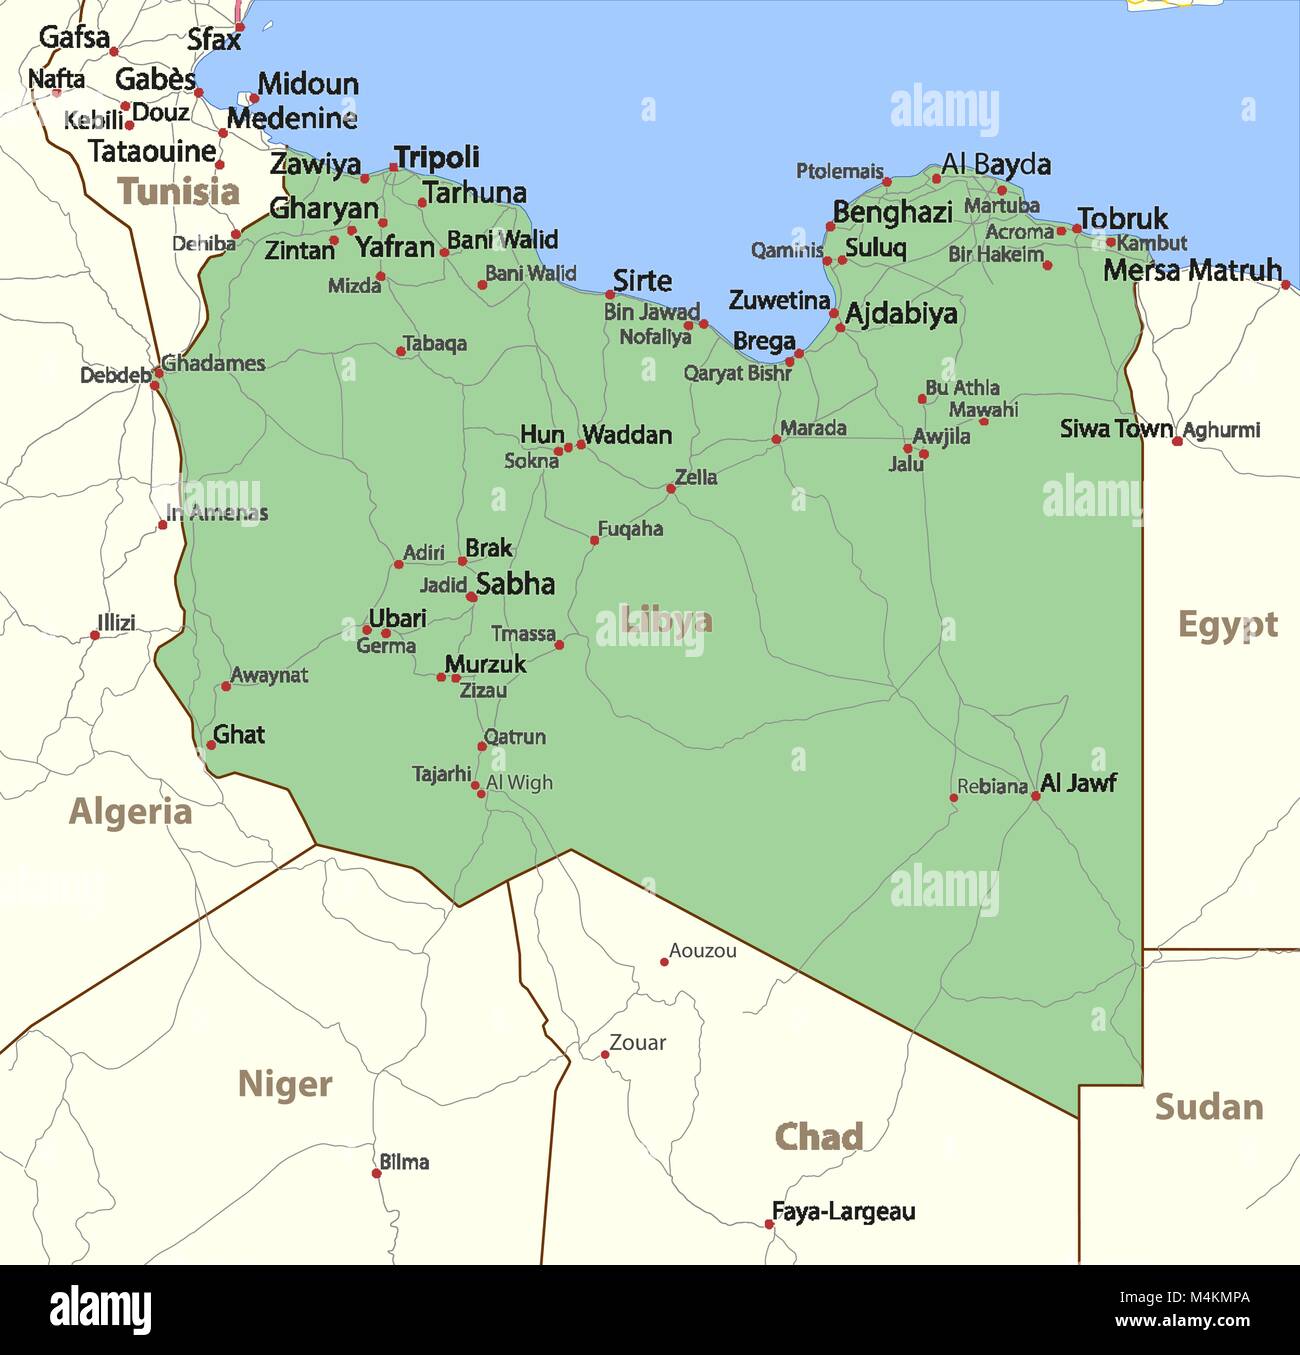 Karte von Libyen. Zeigt die Ländergrenzen, Ortsnamen und Straßen. Beschriftungen in Englisch, wo dies möglich ist. Projektion: Mercator. Stock Vektor